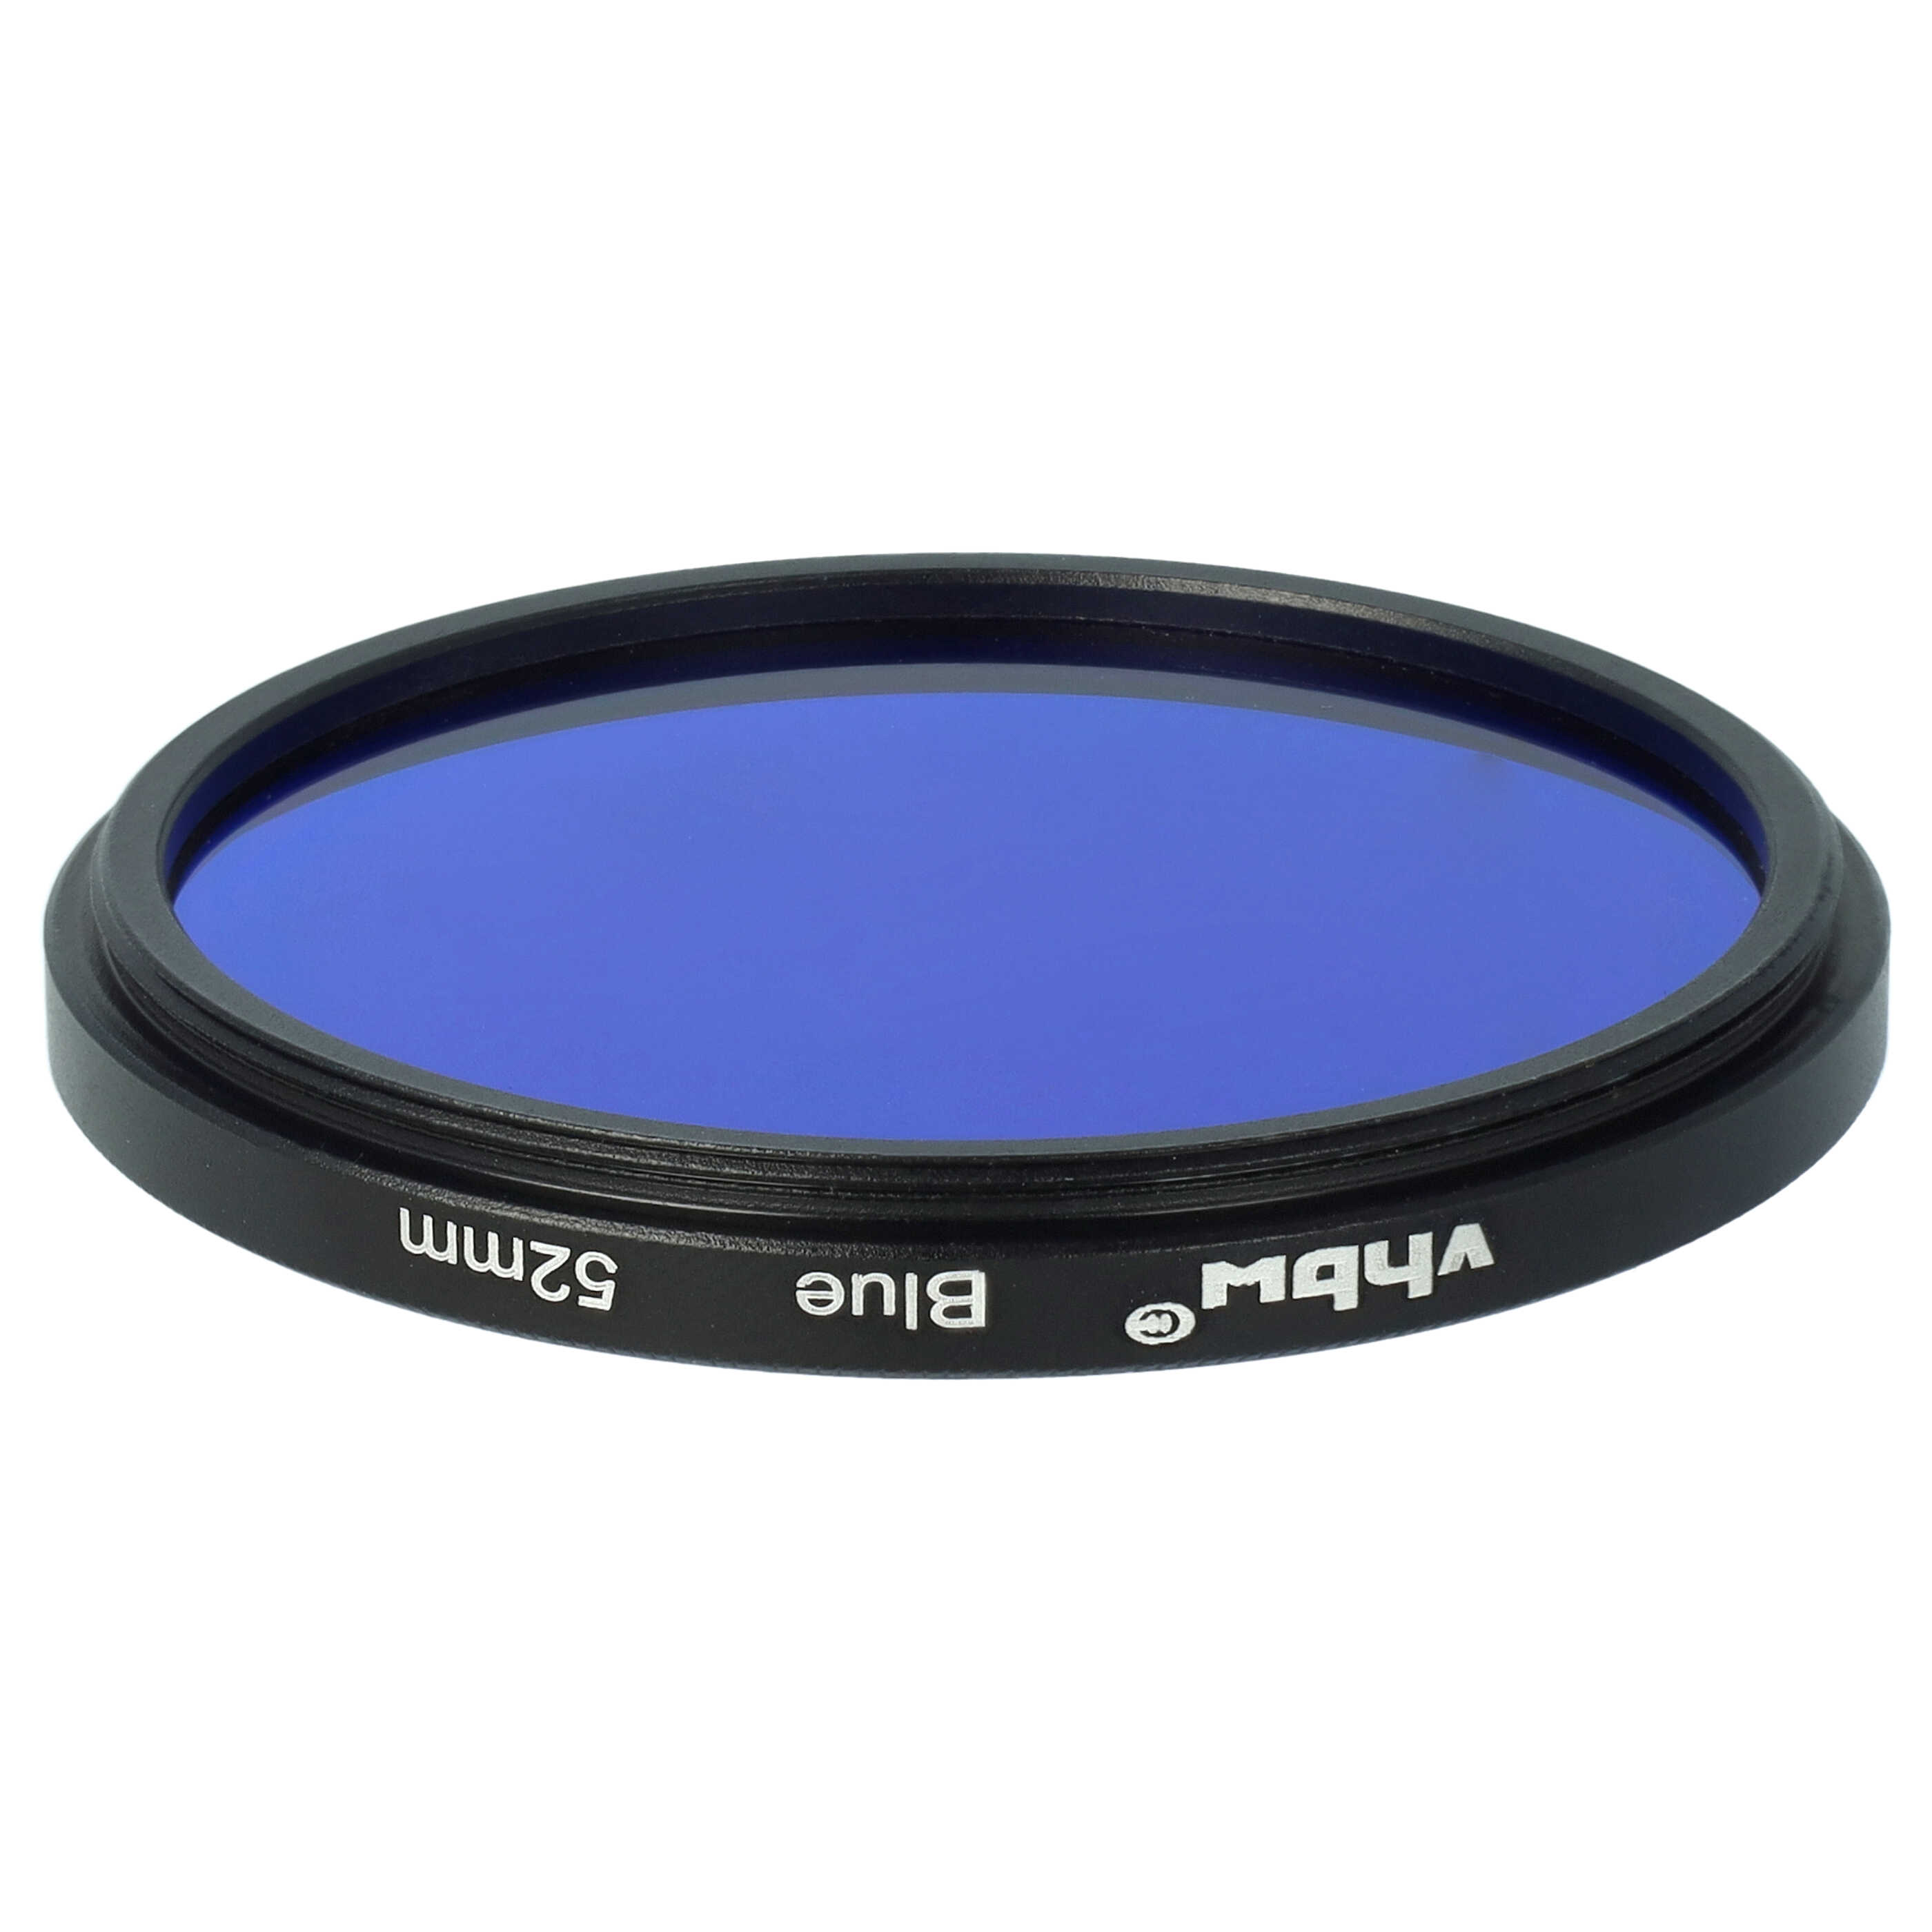 Filtre de couleur bleu pour objectifs d'appareils photo de 52 mm - Filtre bleu